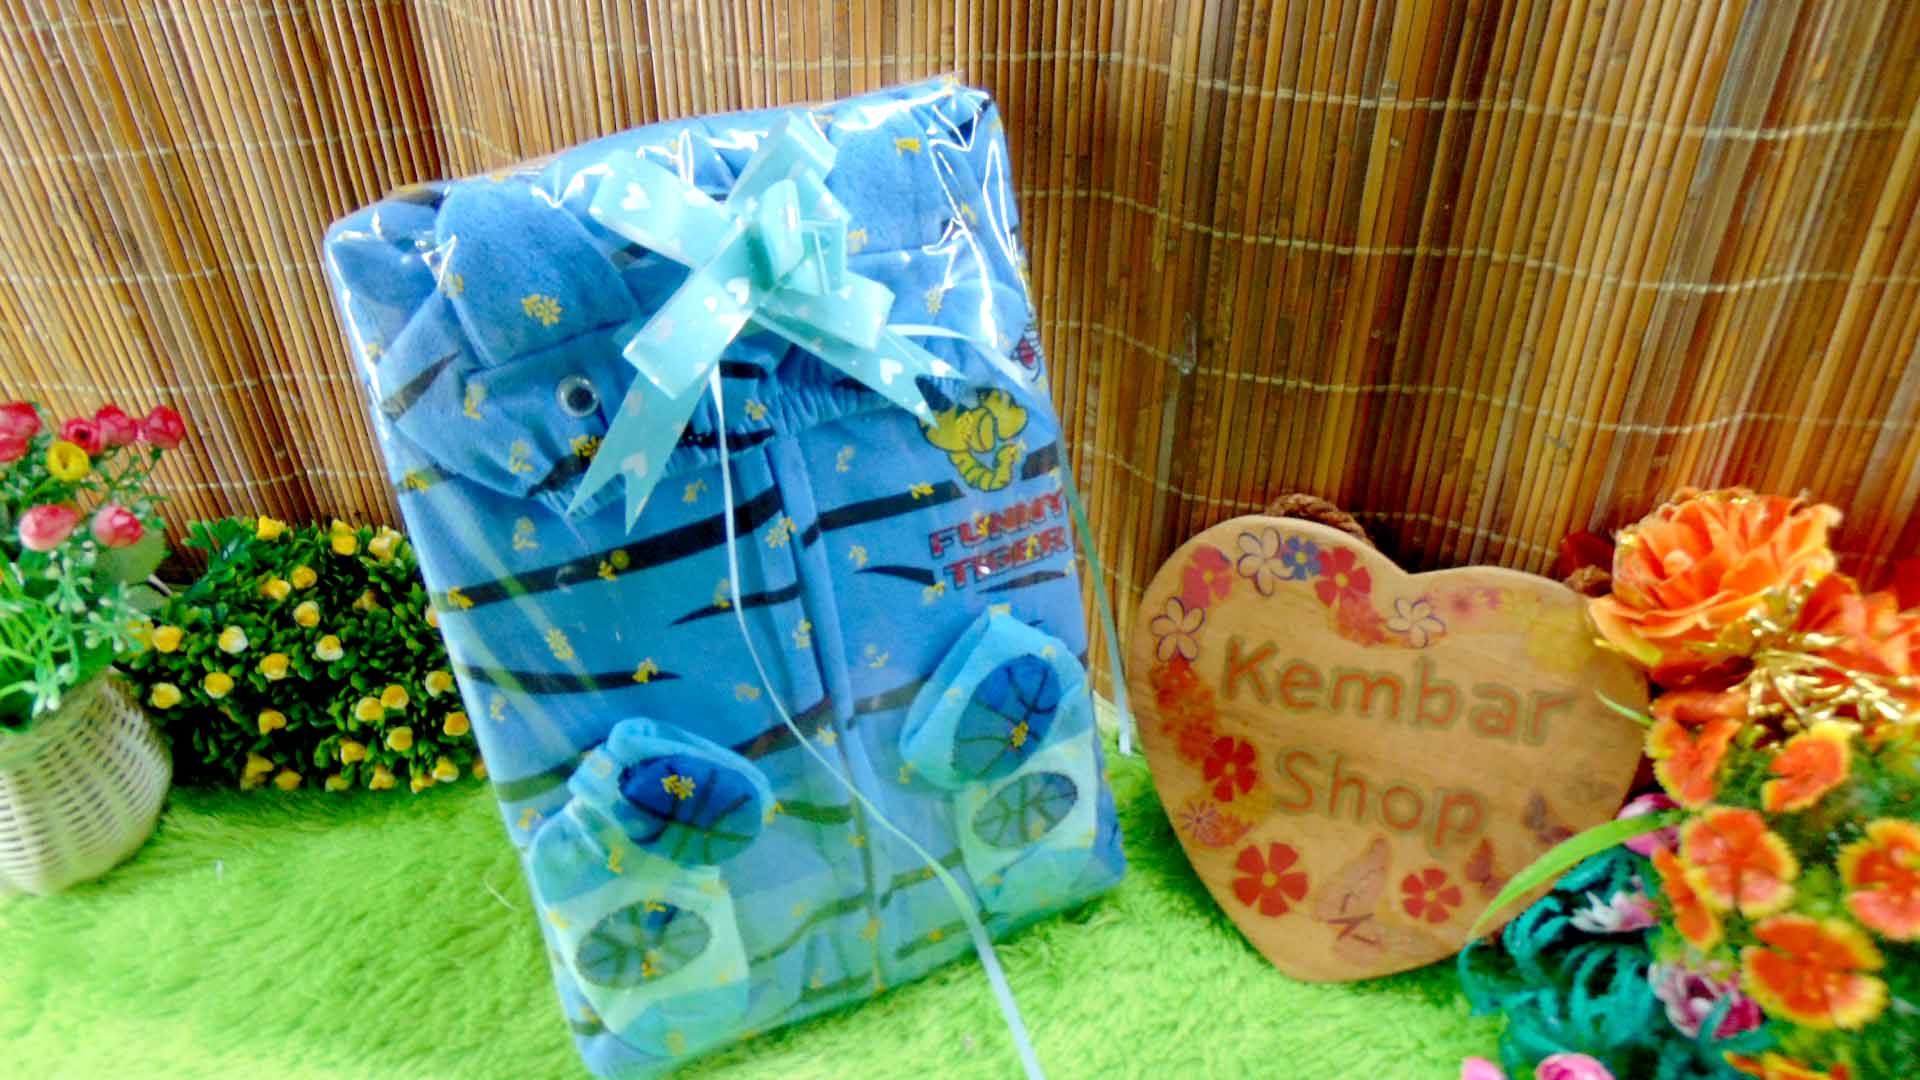 8 FREE KARTU UCAPAN paket kado lahiran bayi baby gift set box jaket plus sock ANEKA motif